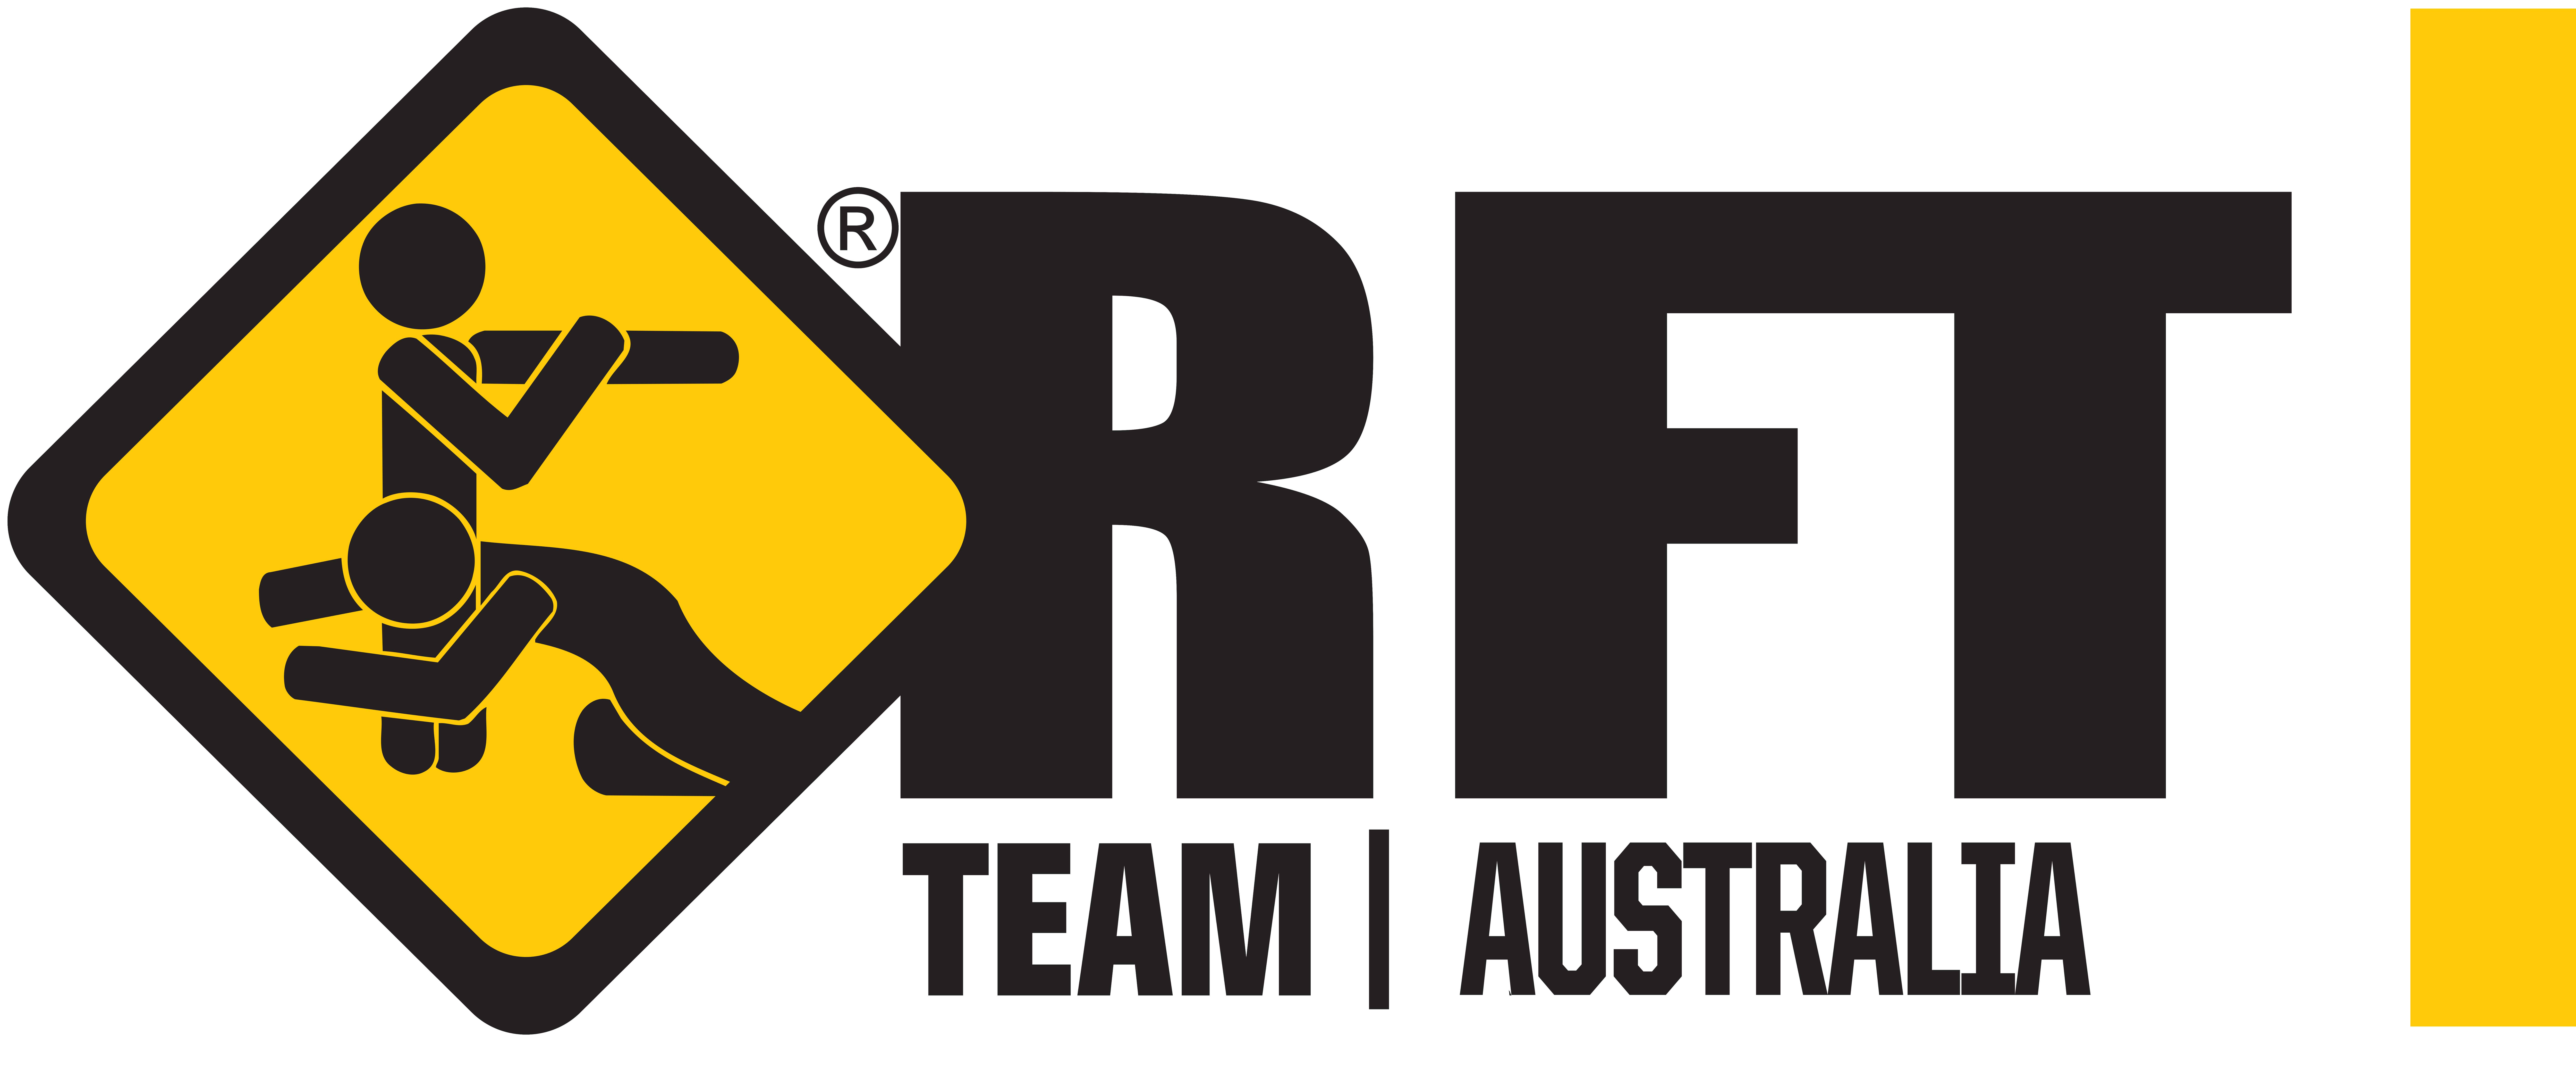 logo-rft-team-australia_full_2015